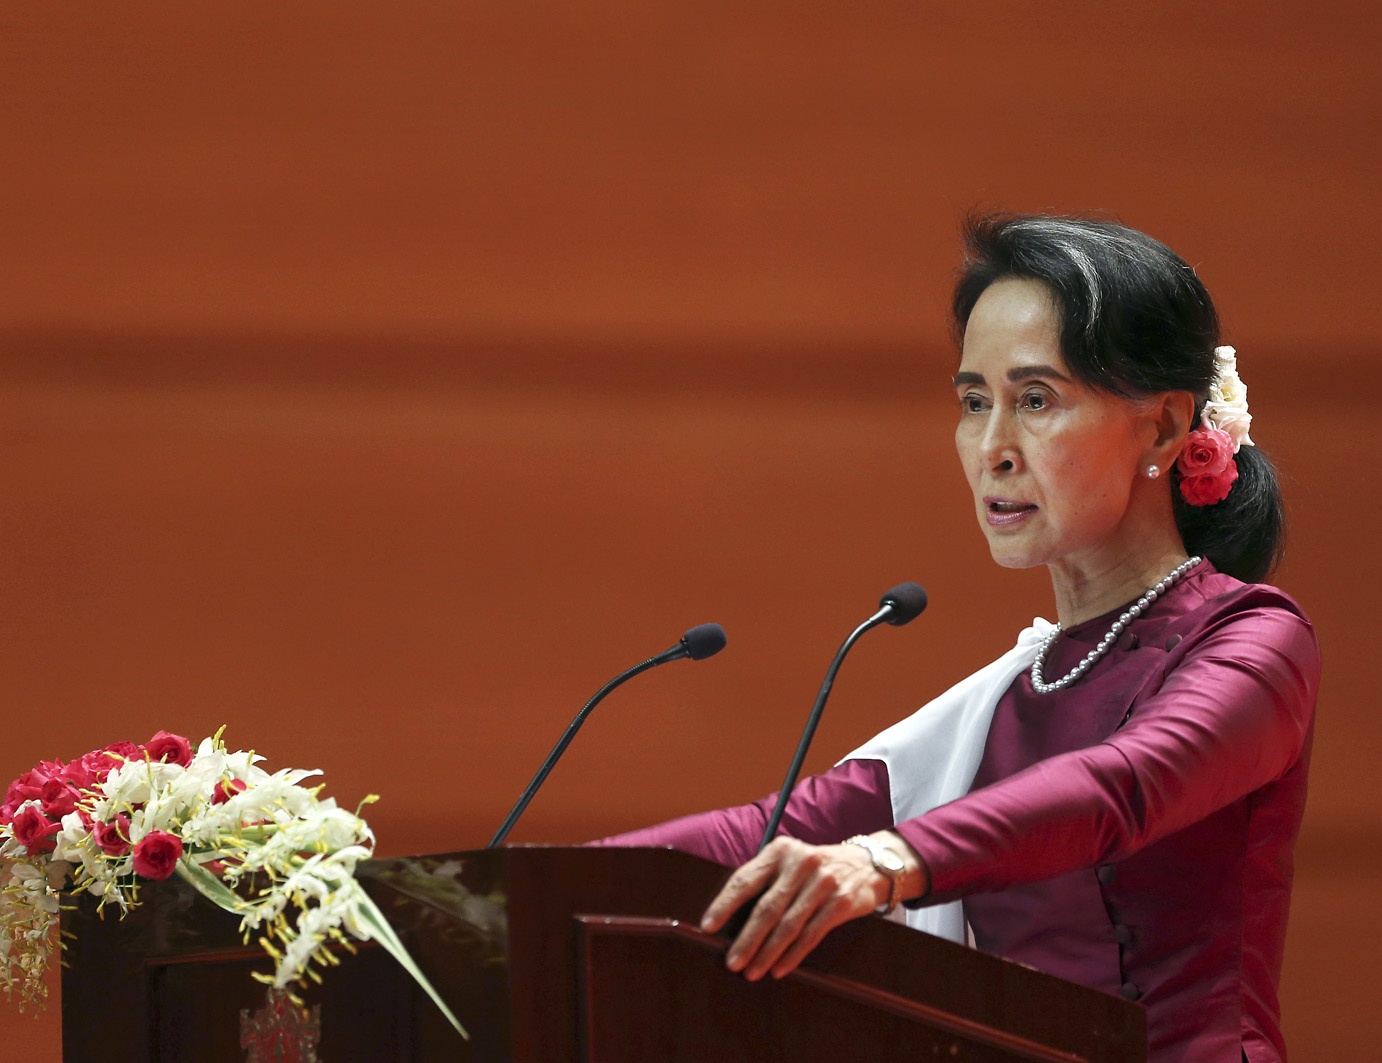 Efter anklagelser om etnisk rensning riktad mot den muslimska
folkgruppen rohingya sade Aung San Suu Kyi i sitt
tal i september 2017 att hon inte räds omvärldens dom.